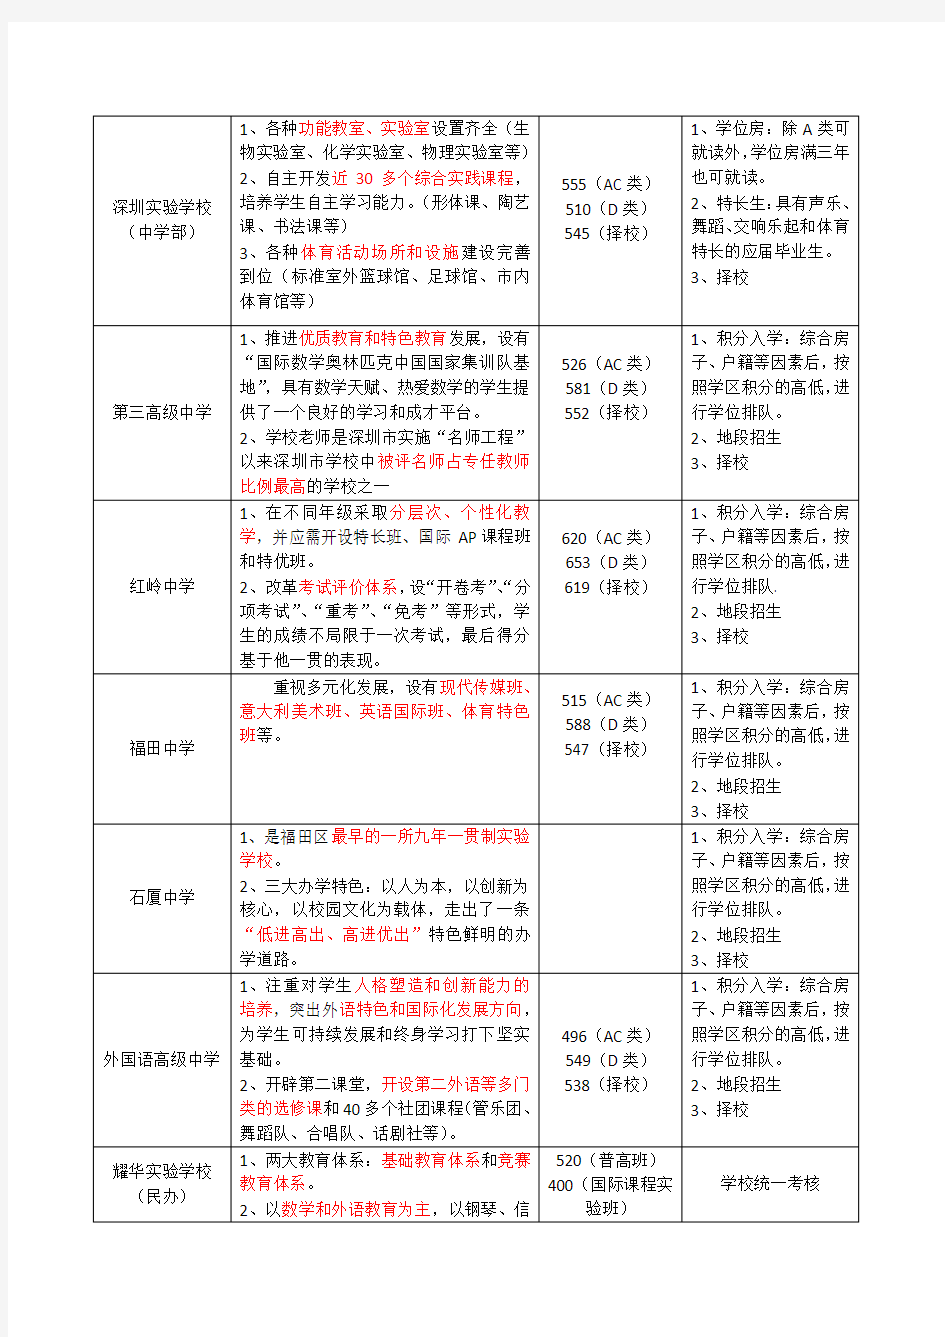 深圳市各区初中学校统计(截止2014年)